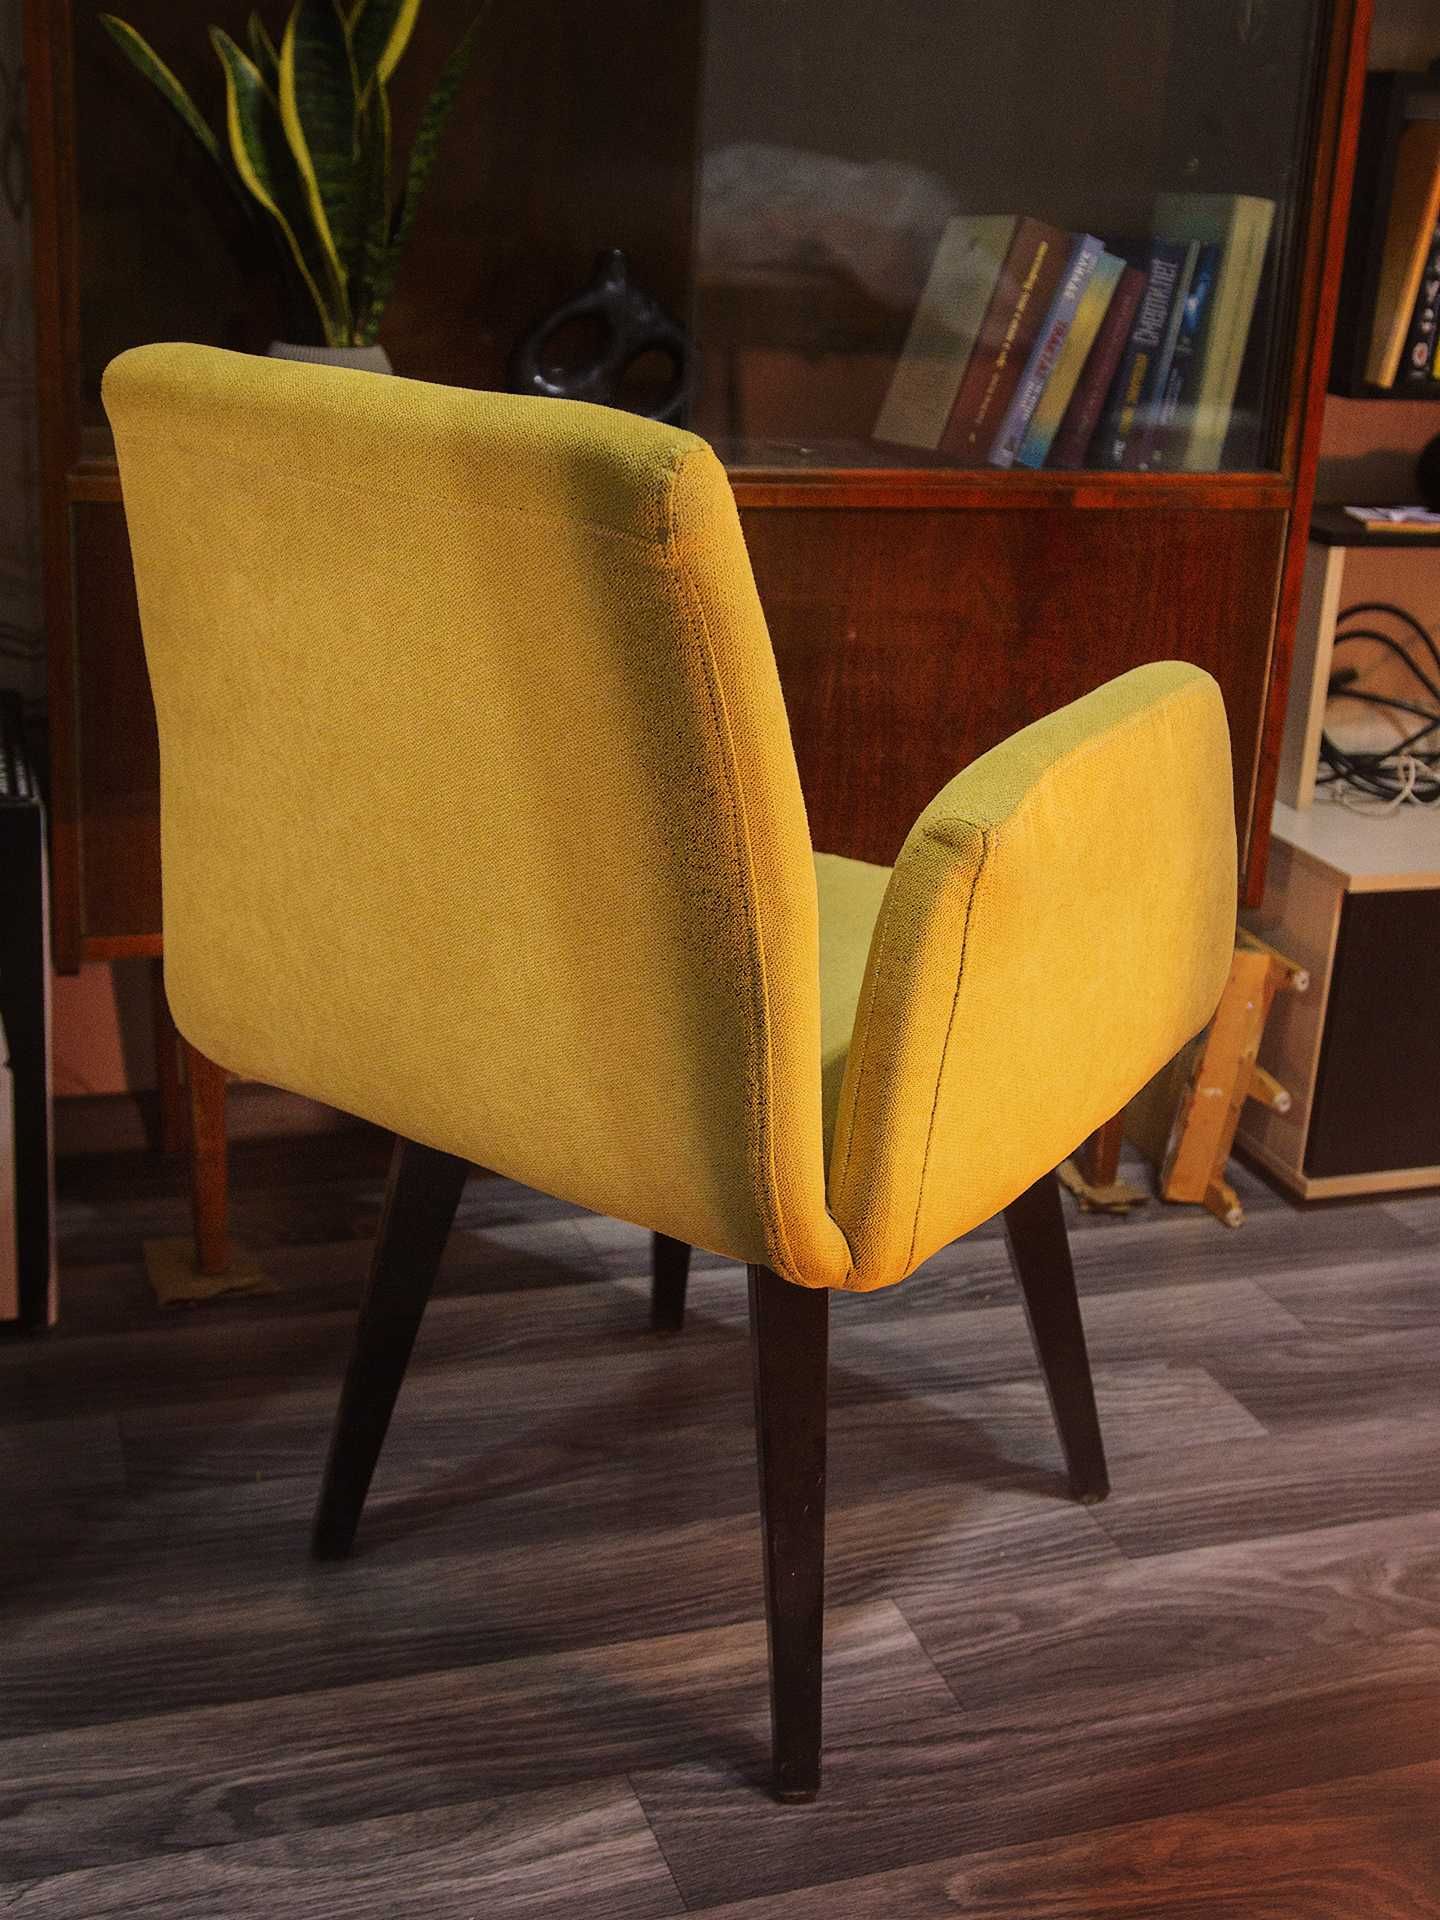 Кресла-стулья для кухни или гостиной